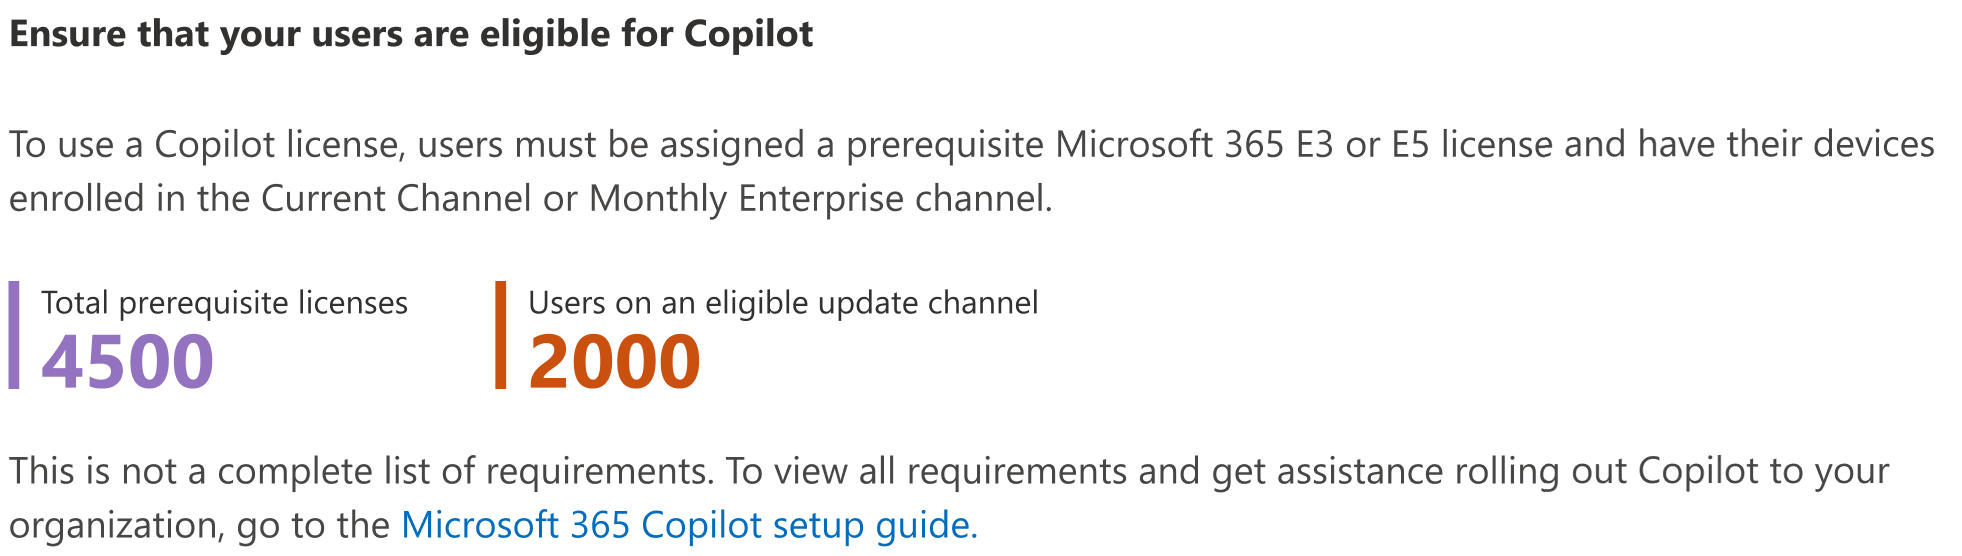 ユーザーが Microsoft 365 の Copilot の対象であることを確認する方法を示すスクリーンショット。